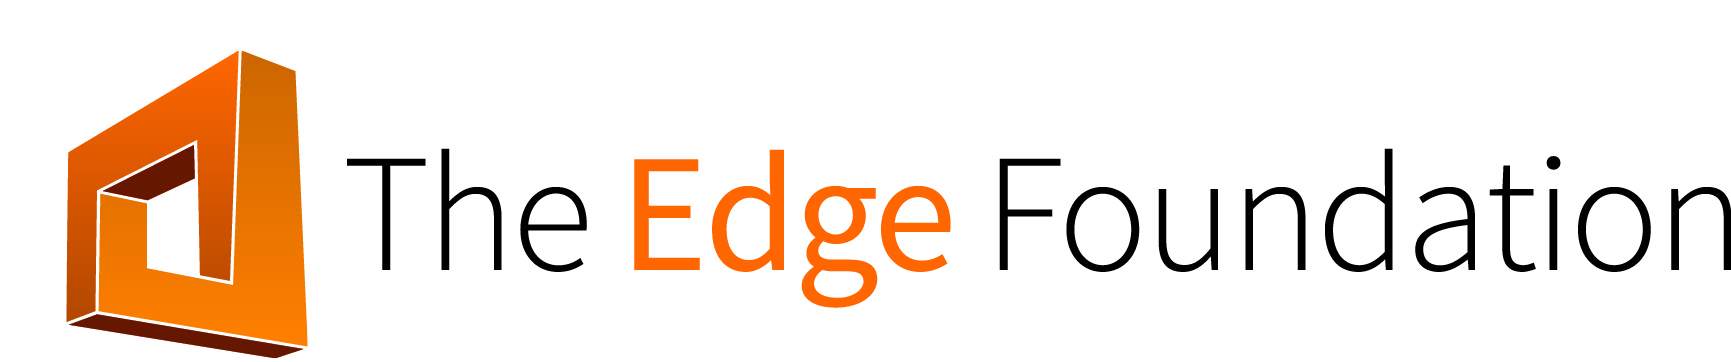 EF logo 1 line (002)